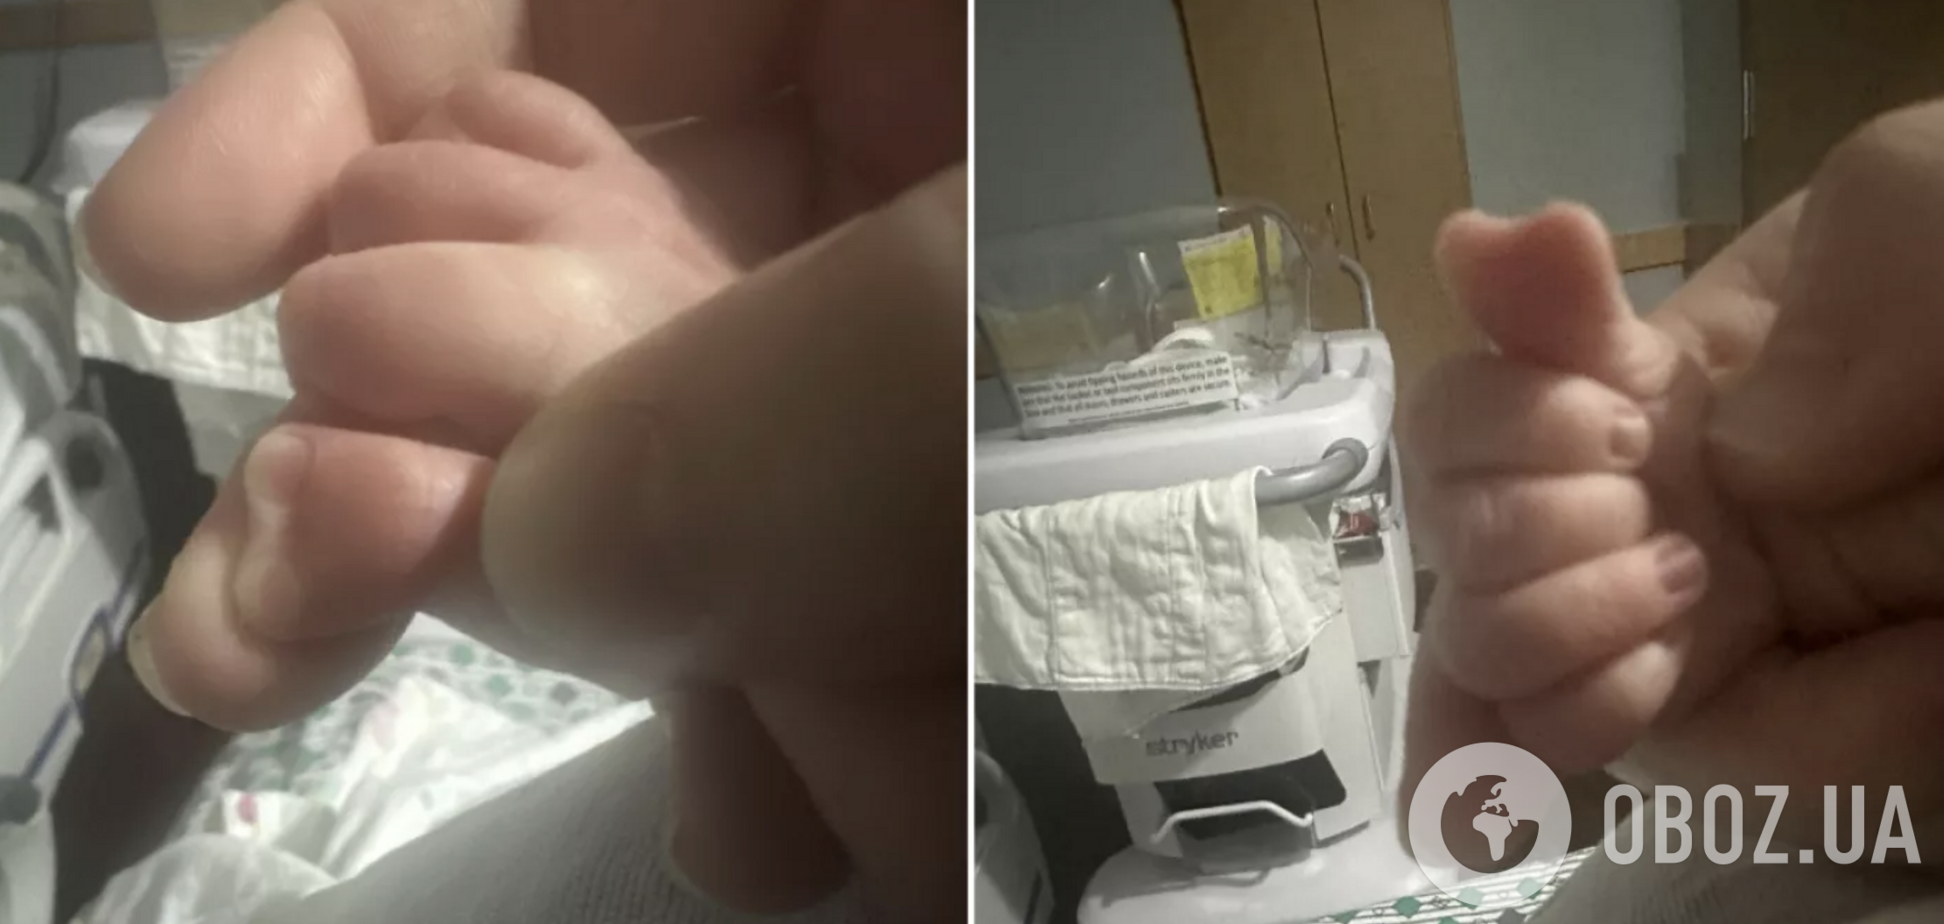 Лікарі ніколи такого не бачили: у США народився хлопчик з великим пальцем у формі серця. Фото